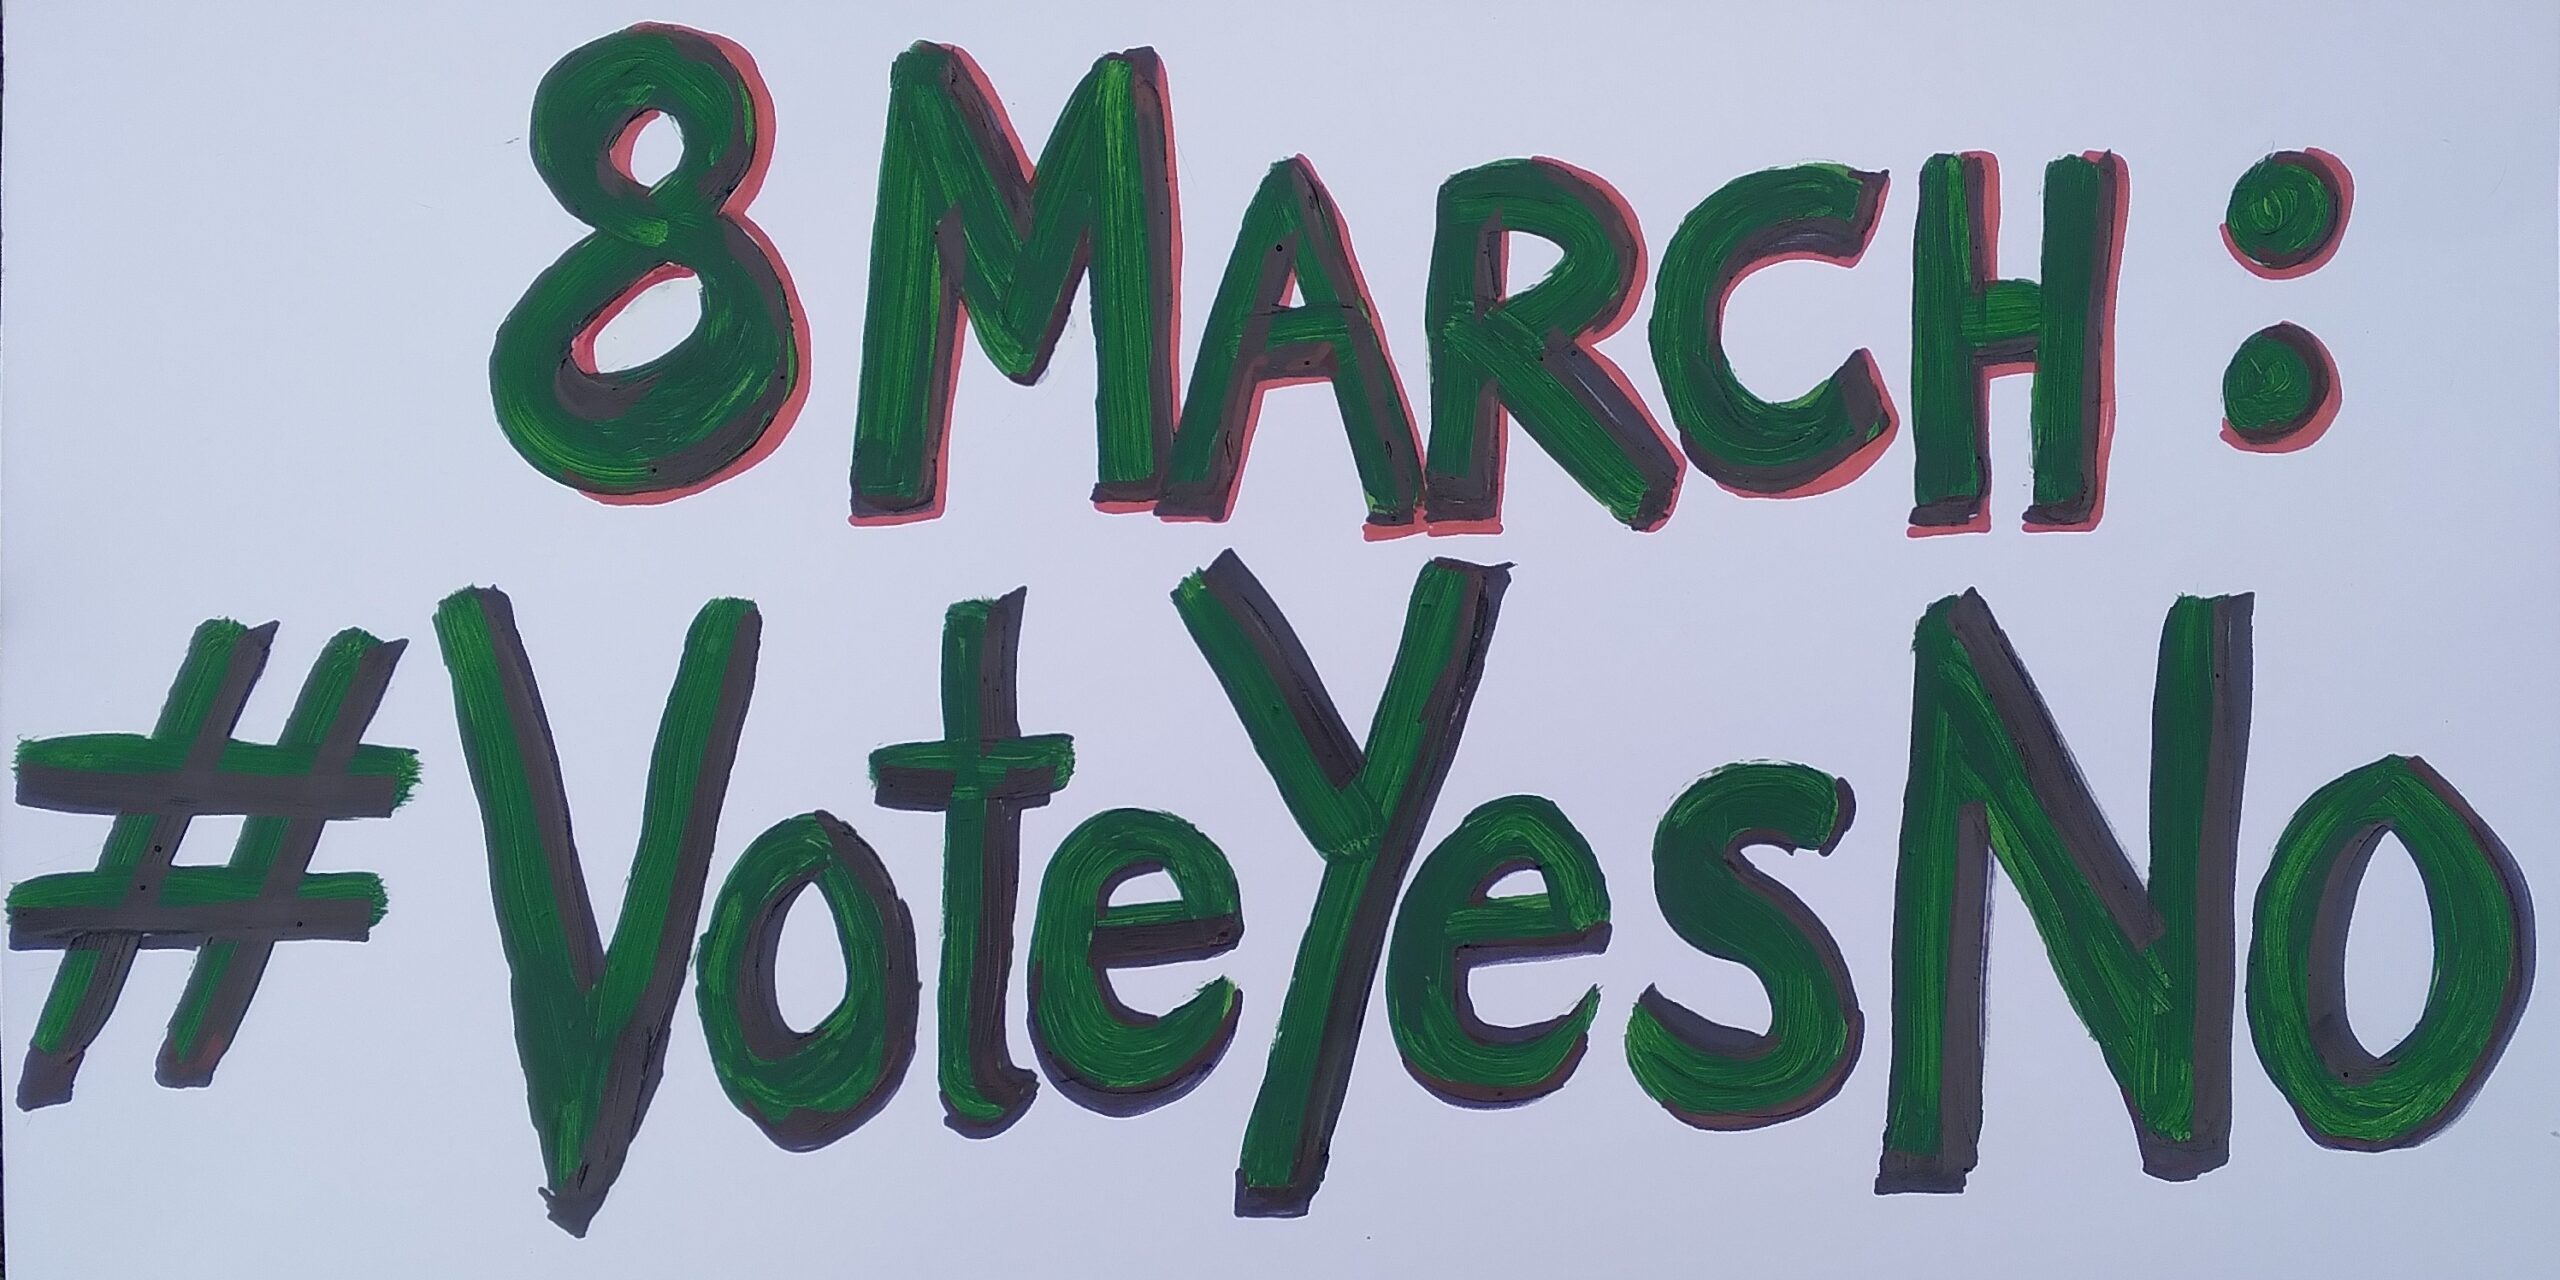 Ireland vote placard